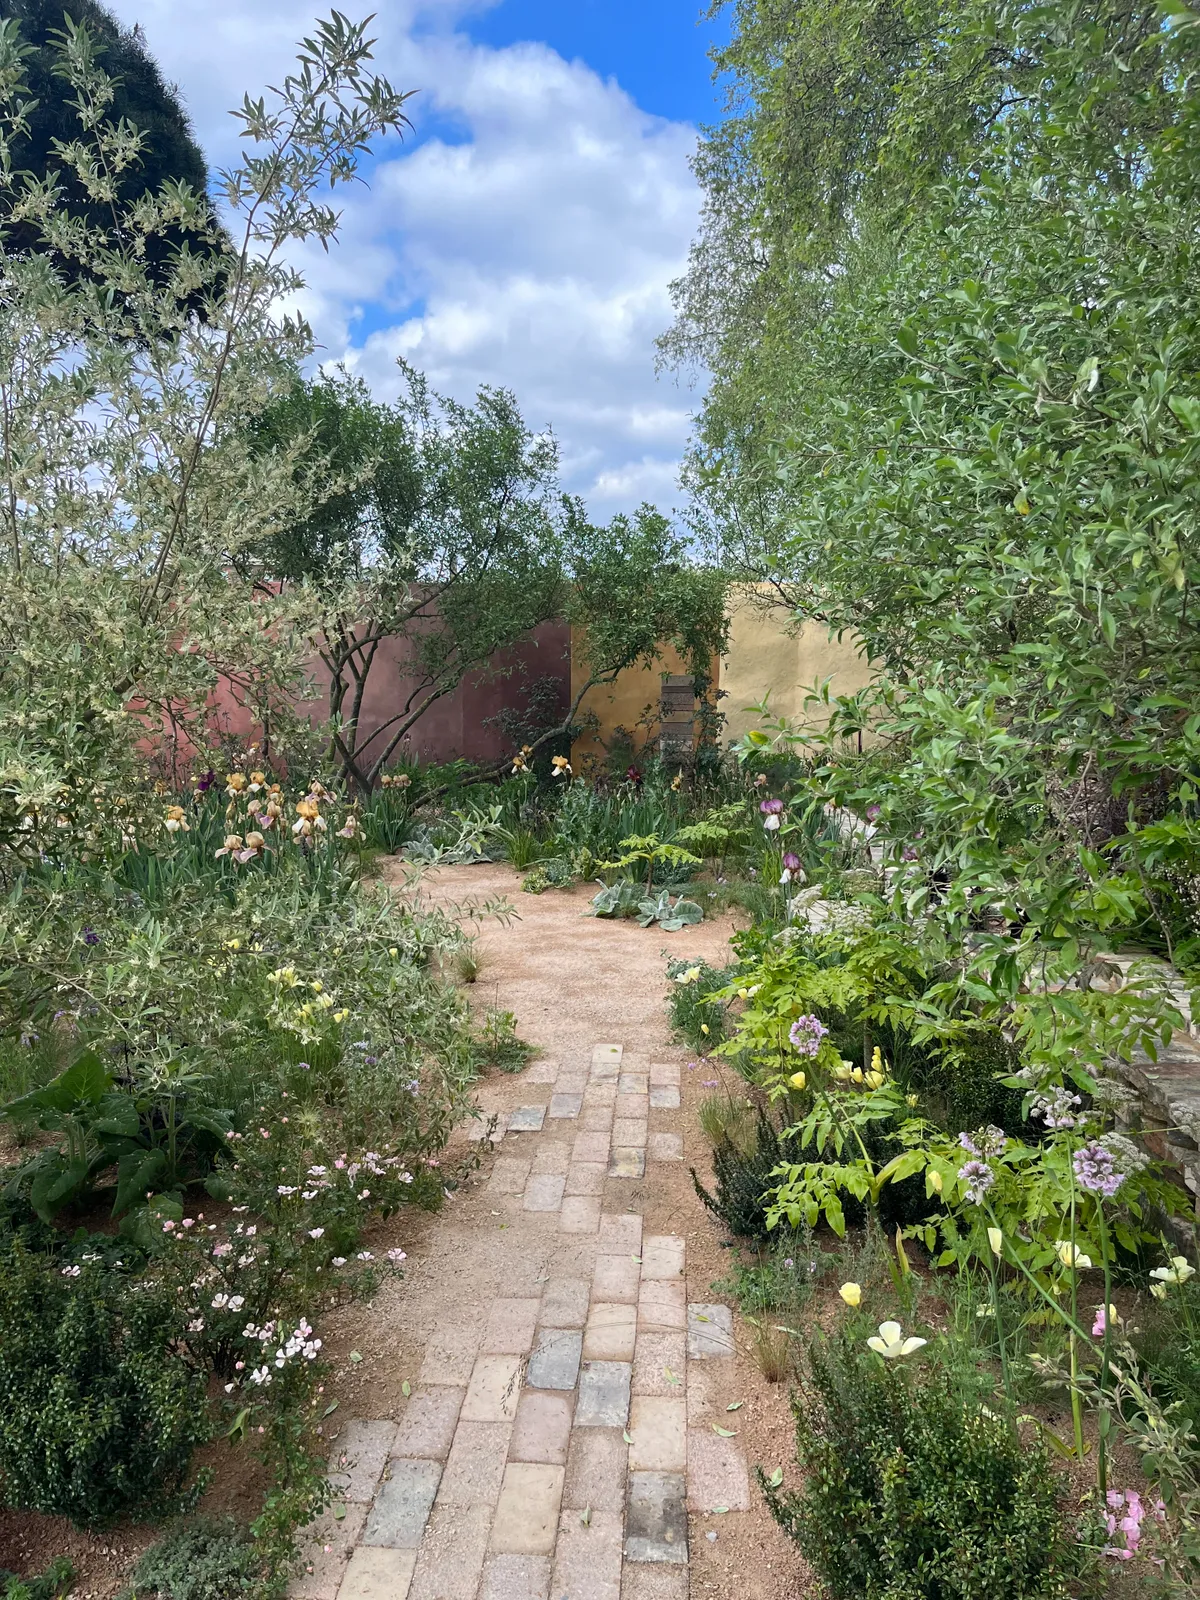 Chelsea Flower Show Garden 2023: The Nurture Landscapes Garden. Designed by Sarah Price. Sponsored by Nurture Landscapes. Show Garden.